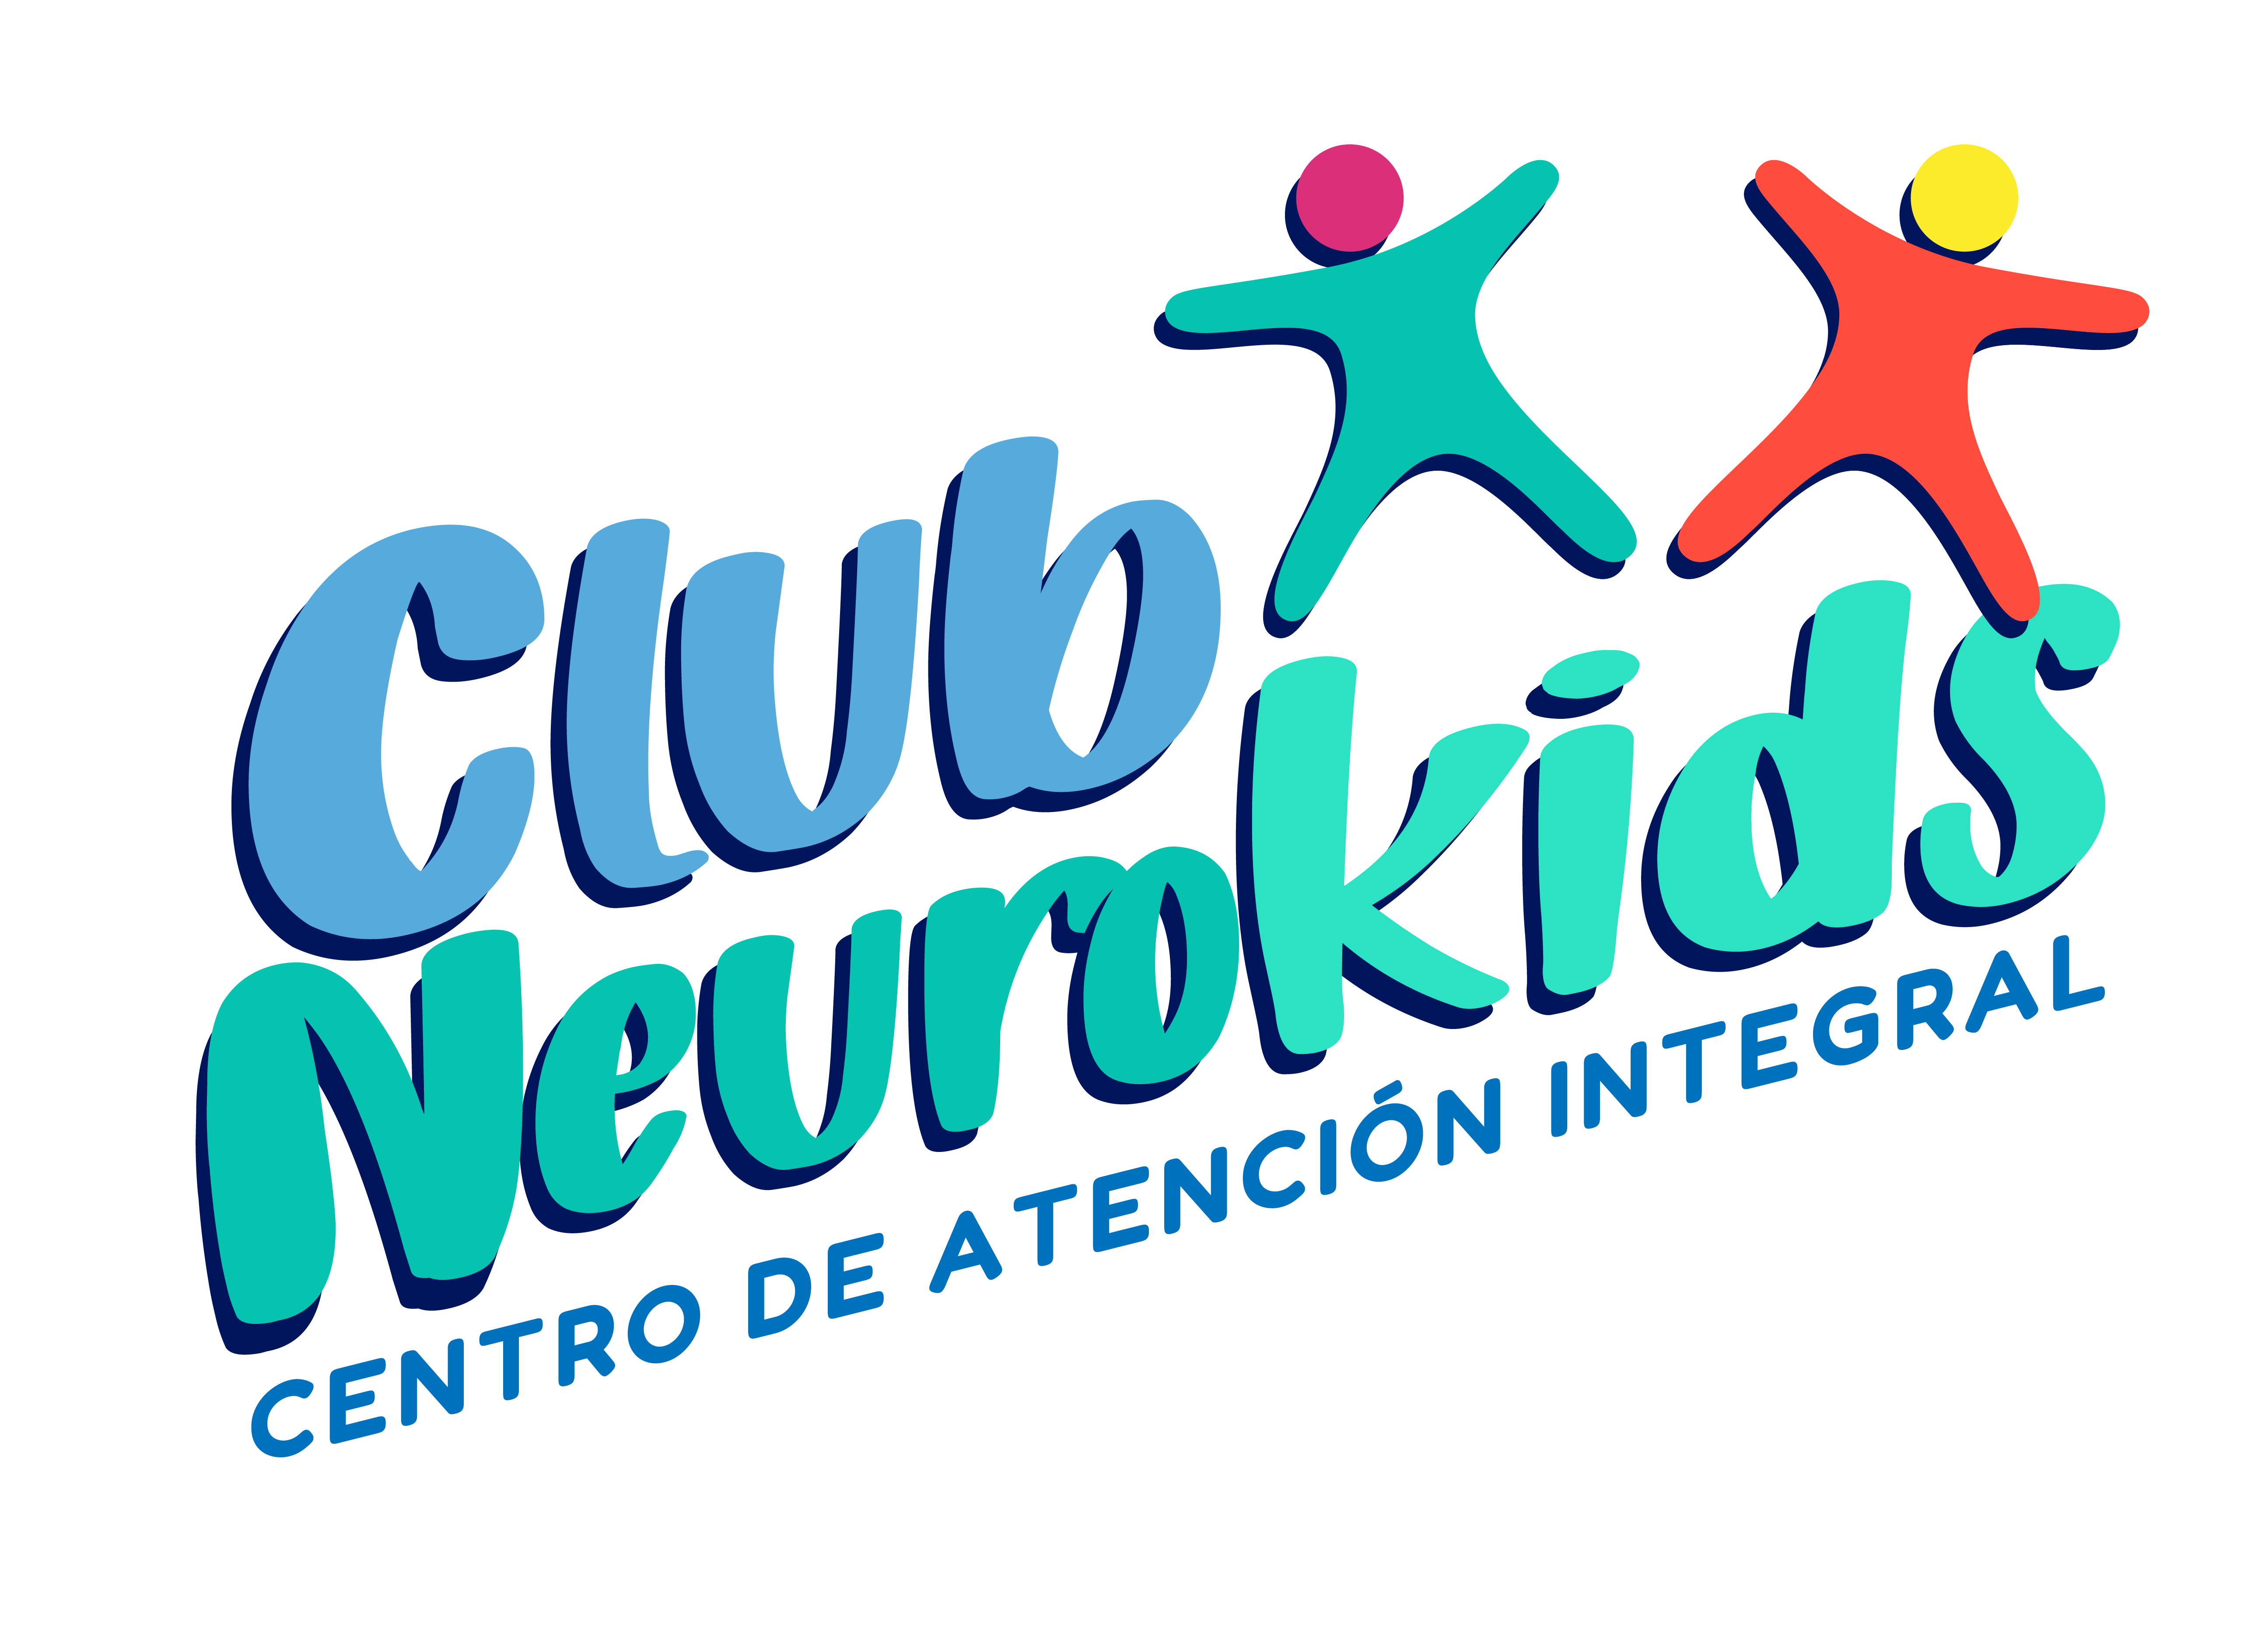 Club Neurokids, Centro de Atención Integral